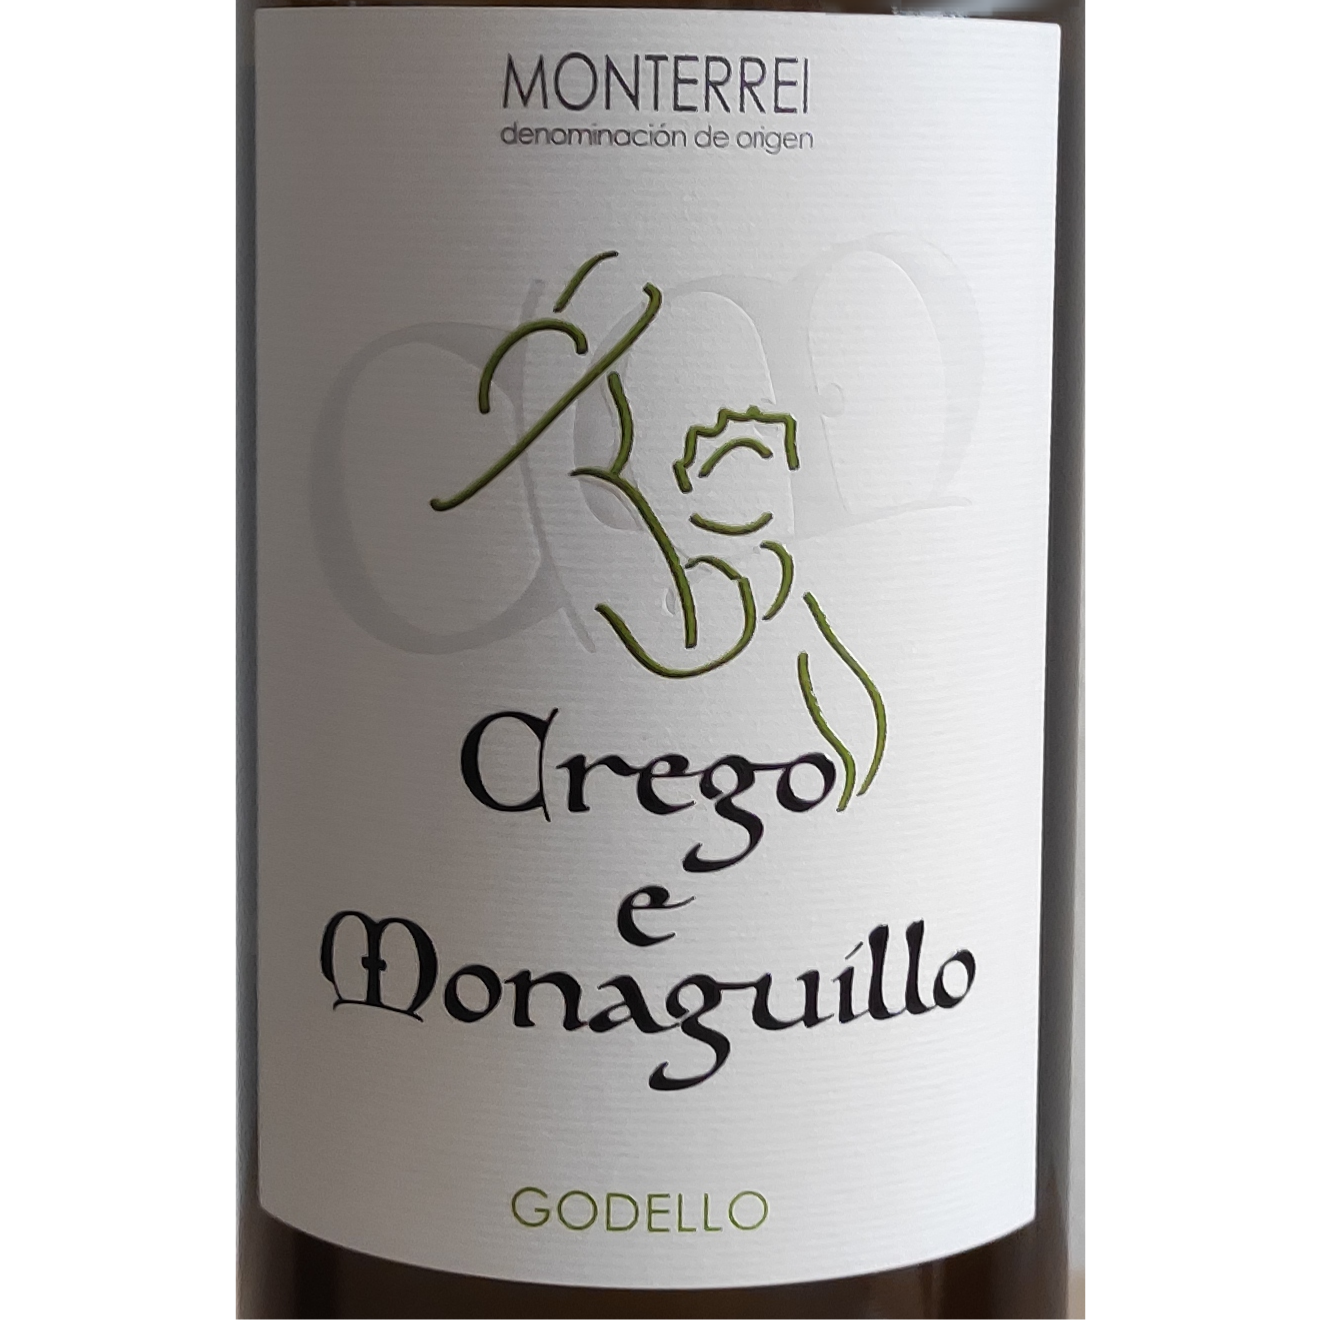 Wine e Smartbites Monaguillo blanco Crego - Wines